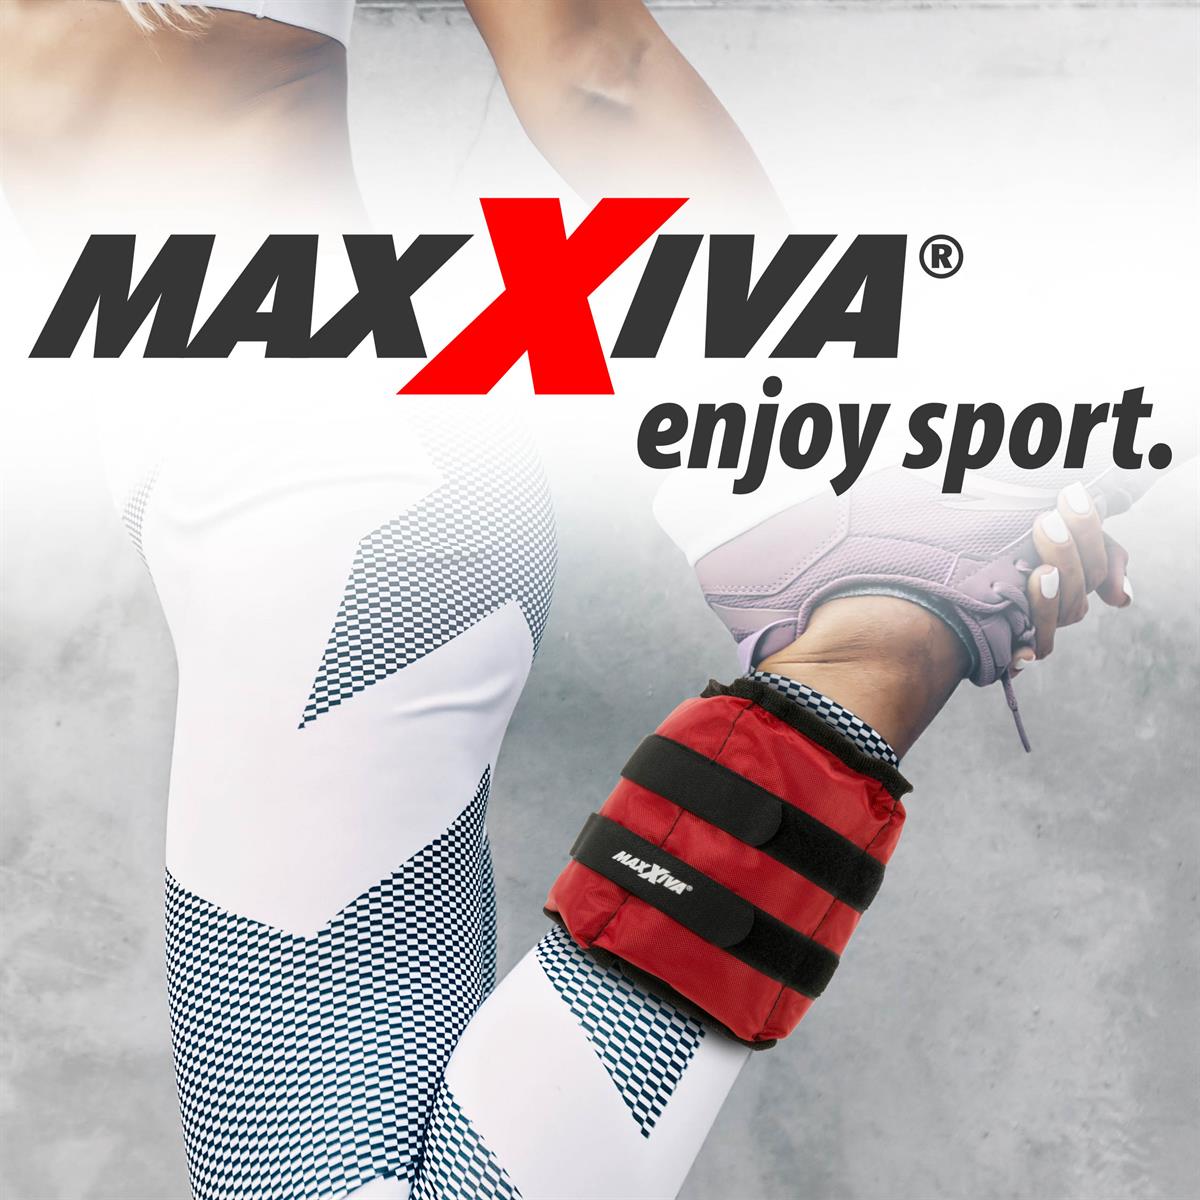 MAXXIVA Gewichtsmannschetten Set 2 x 1 kg Laufgewichte Pink Arm Bein Eisensand